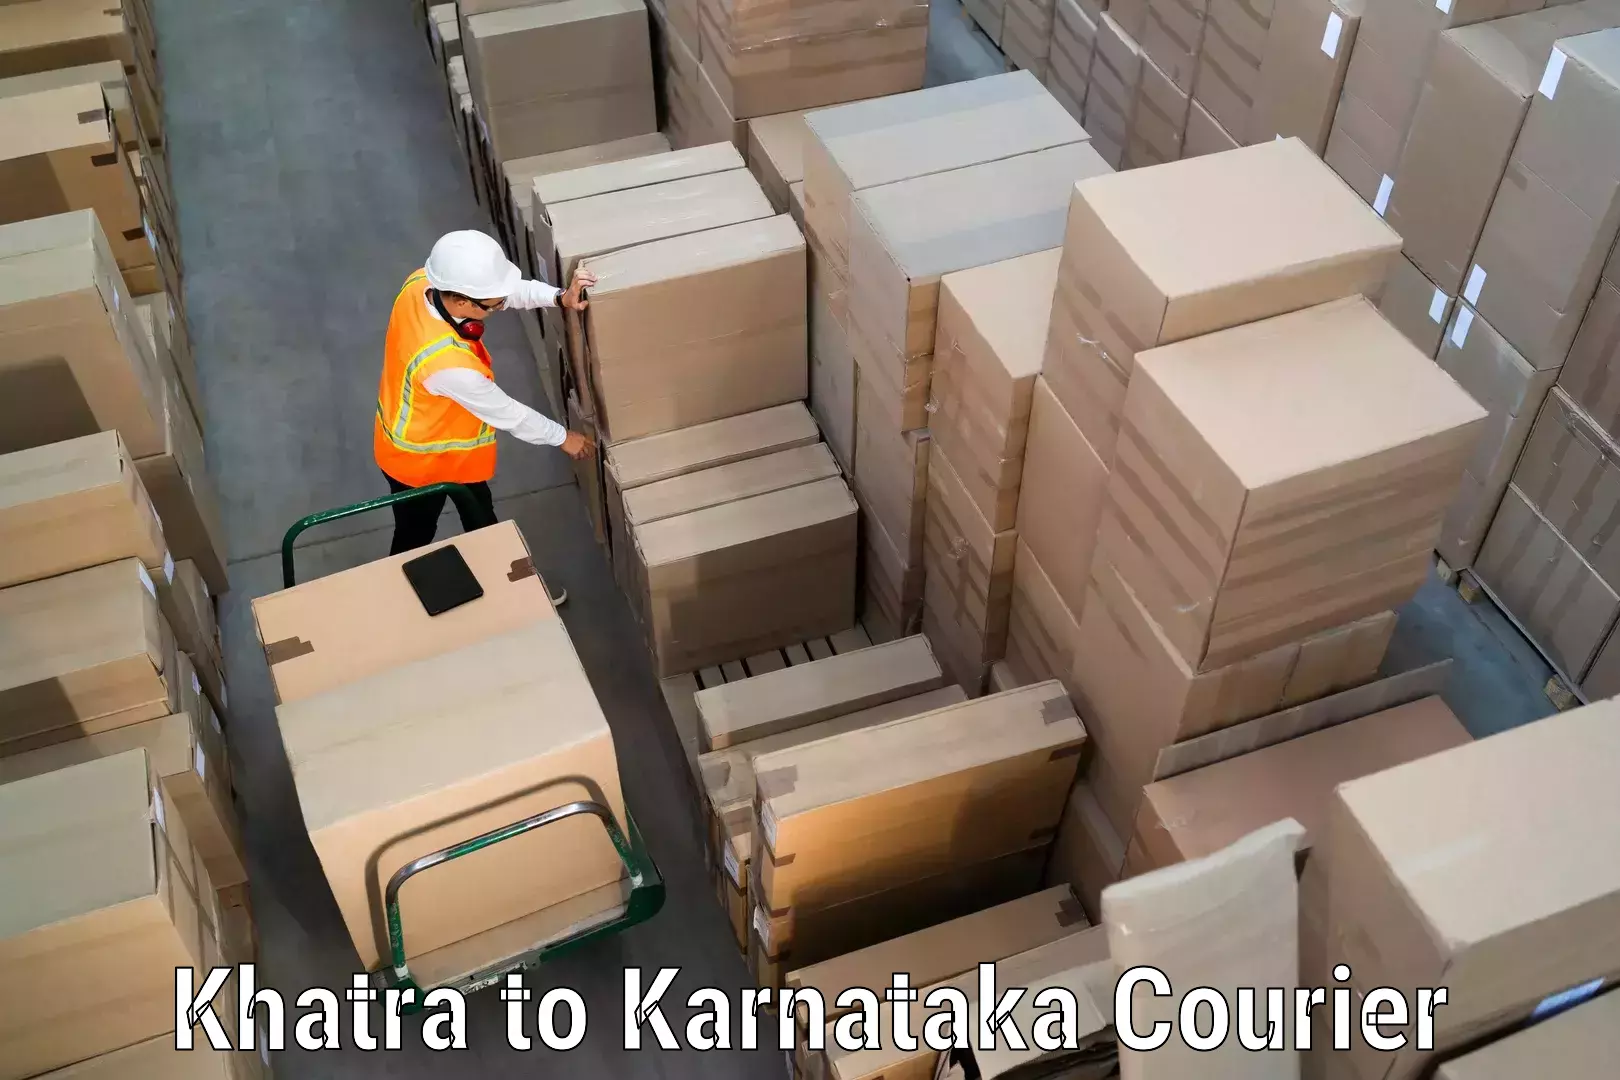 Cash on delivery service Khatra to Mandya